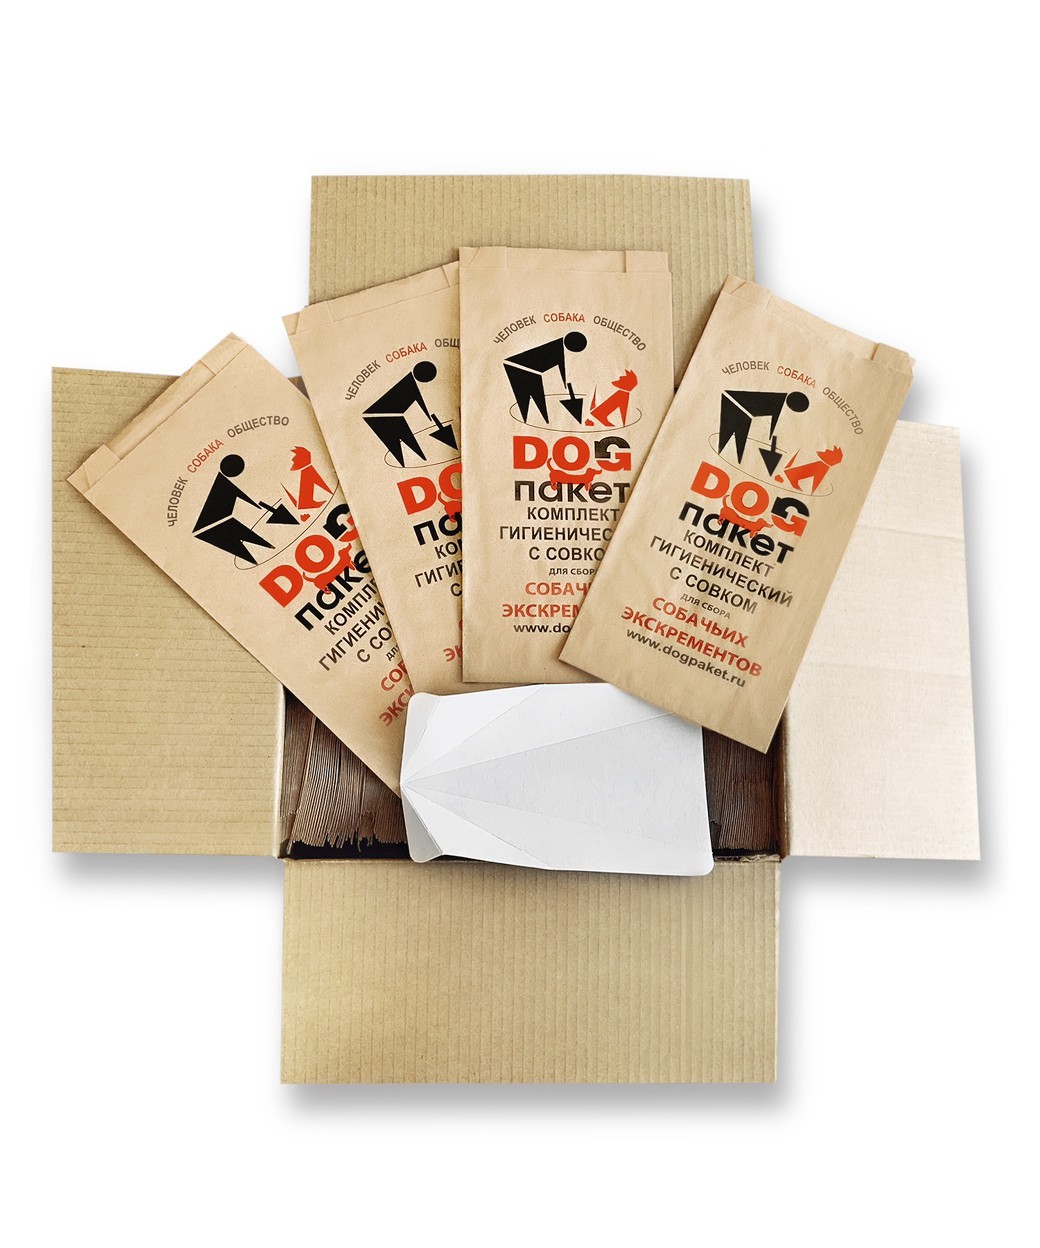 Биоразлагаемые пакеты для собак. Бумажные пакеты для собачьих экскрементов. Пакеты для уборки за собаками. Бумажные пакеты для уборки за собаками. Пакет для фекалий собаки.